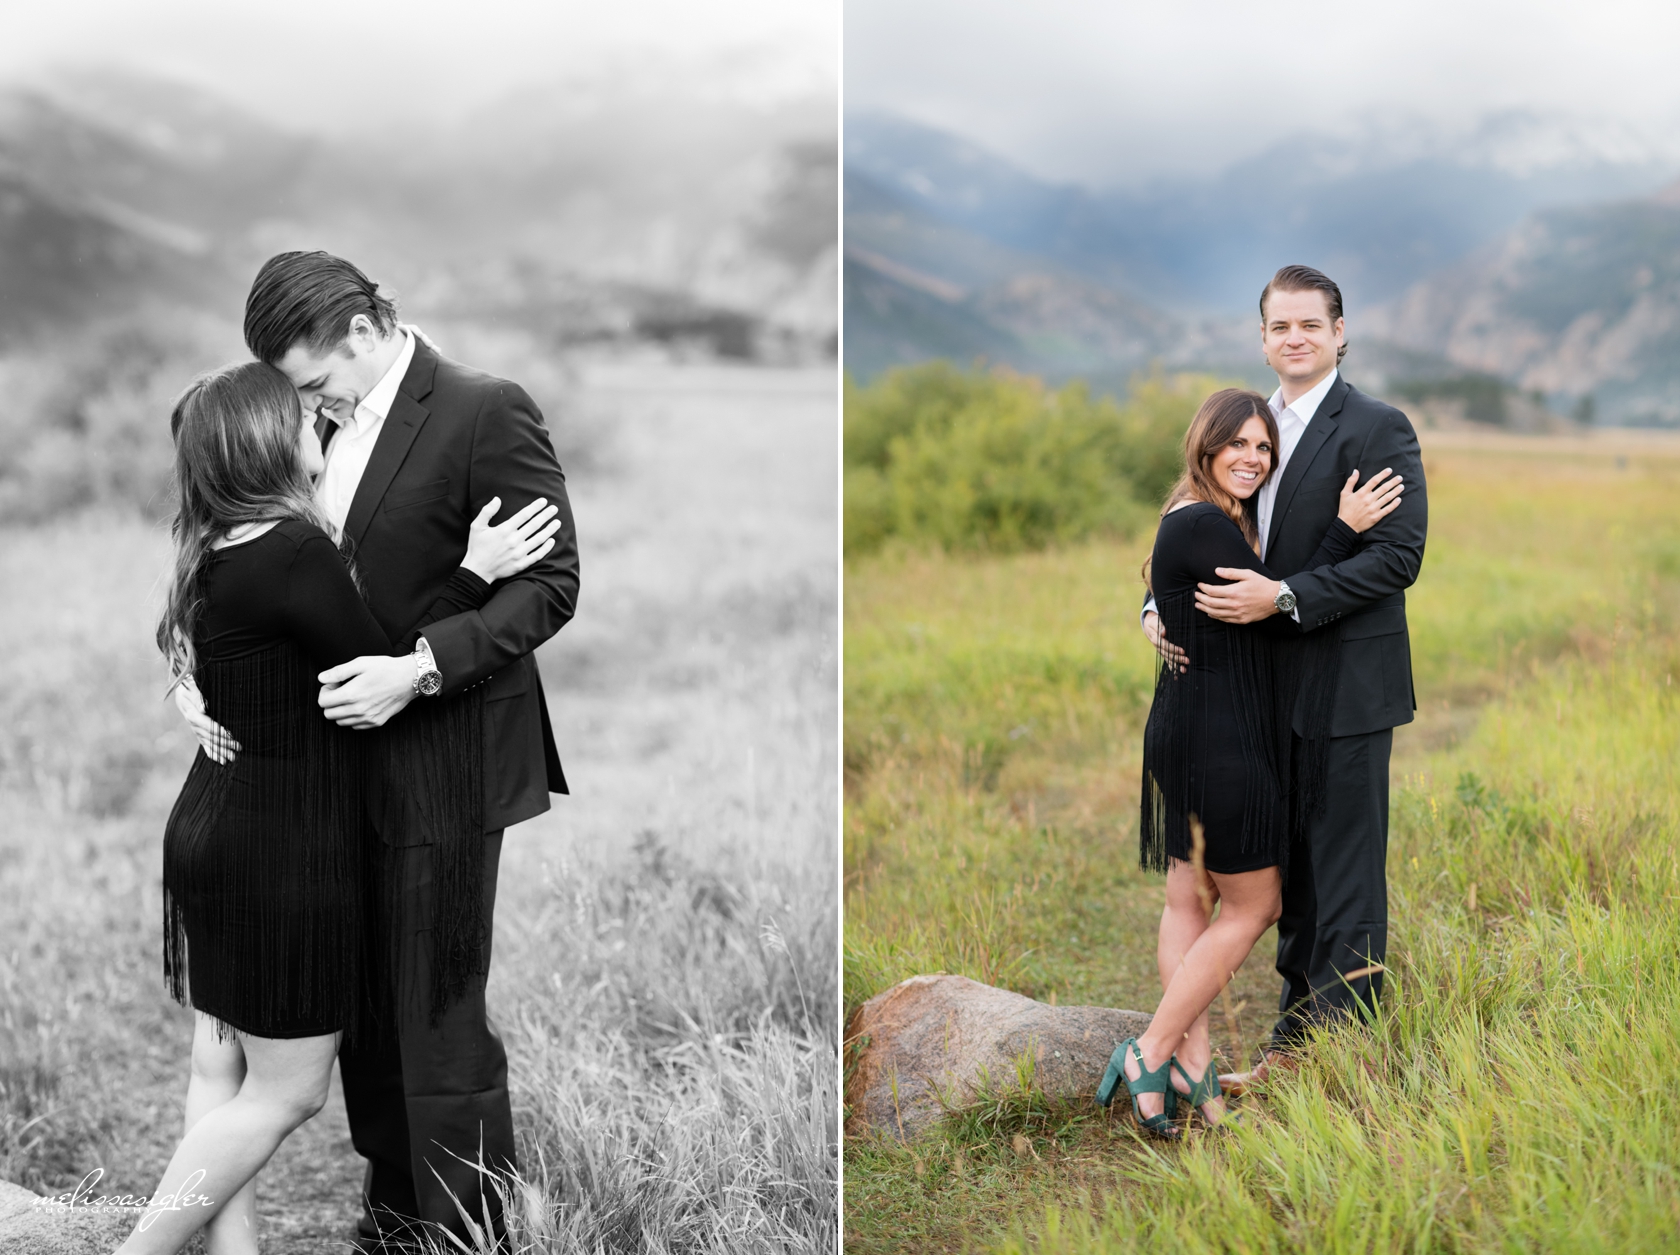 Colorado wedding photographer